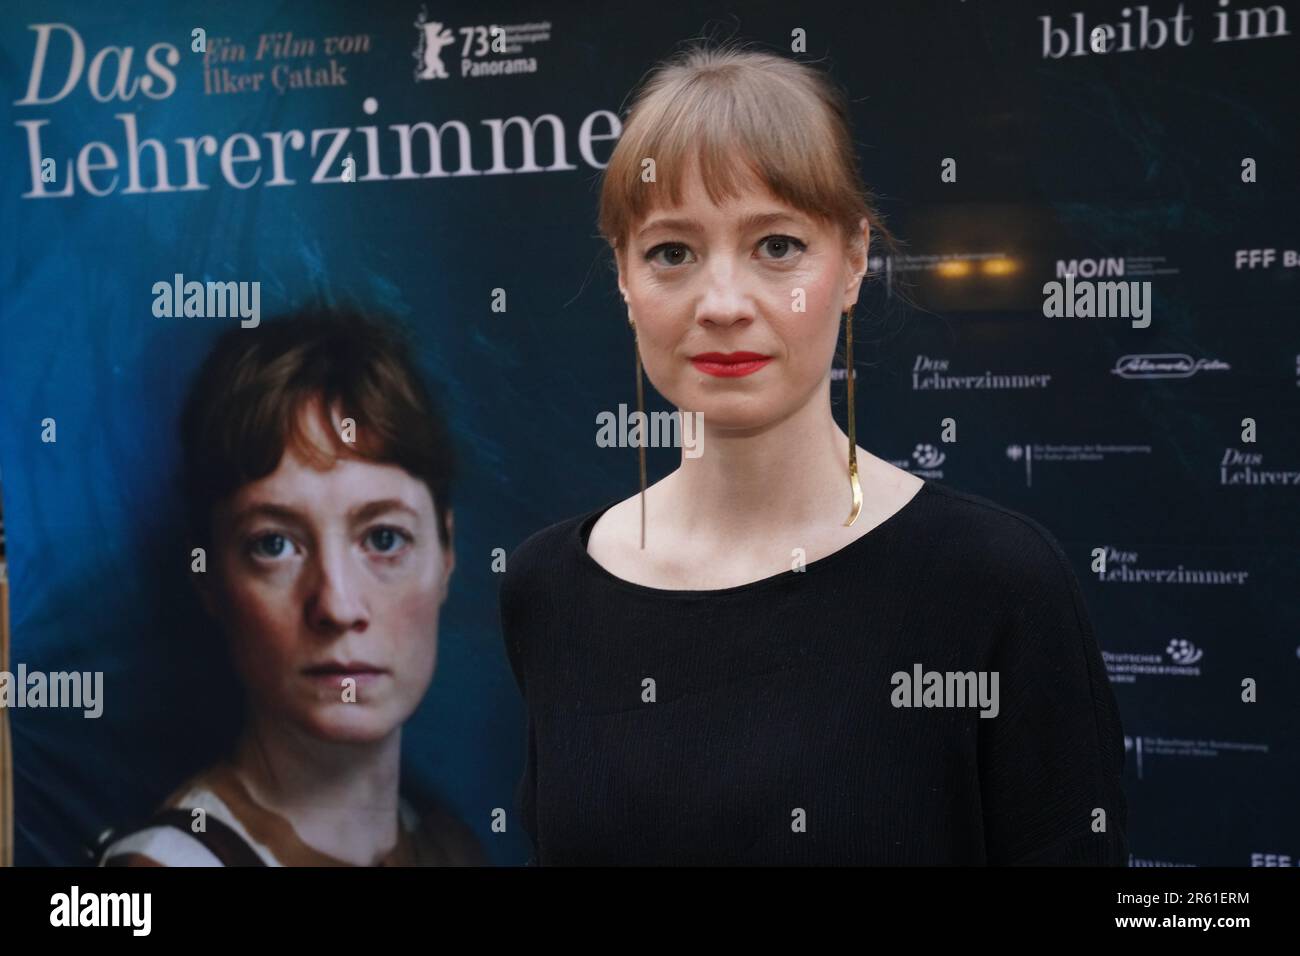 Actress Leonie Benesch seen before the premiere screening of her fim 'Das Lehrerzimmer' at City Cinema in Munich Stock Photo